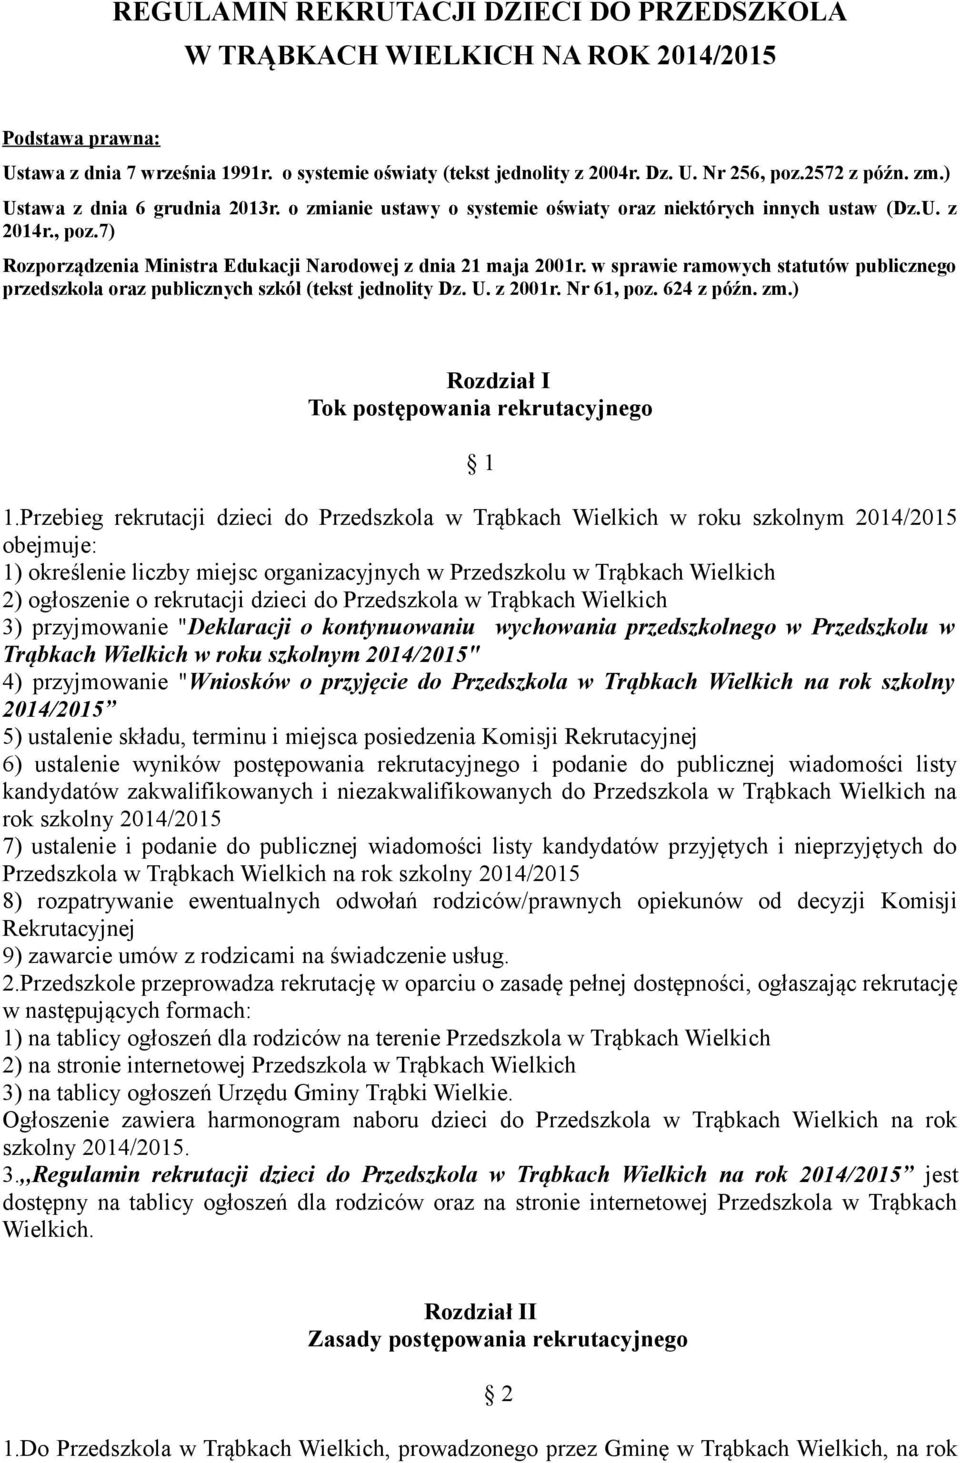 7) Rozporządzenia Ministra Edukacji Narodowej z dnia 21 maja 2001r. w sprawie ramowych statutów publicznego przedszkola oraz publicznych szkół (tekst jednolity Dz. U. z 2001r. Nr 61, poz. 624 z późn.